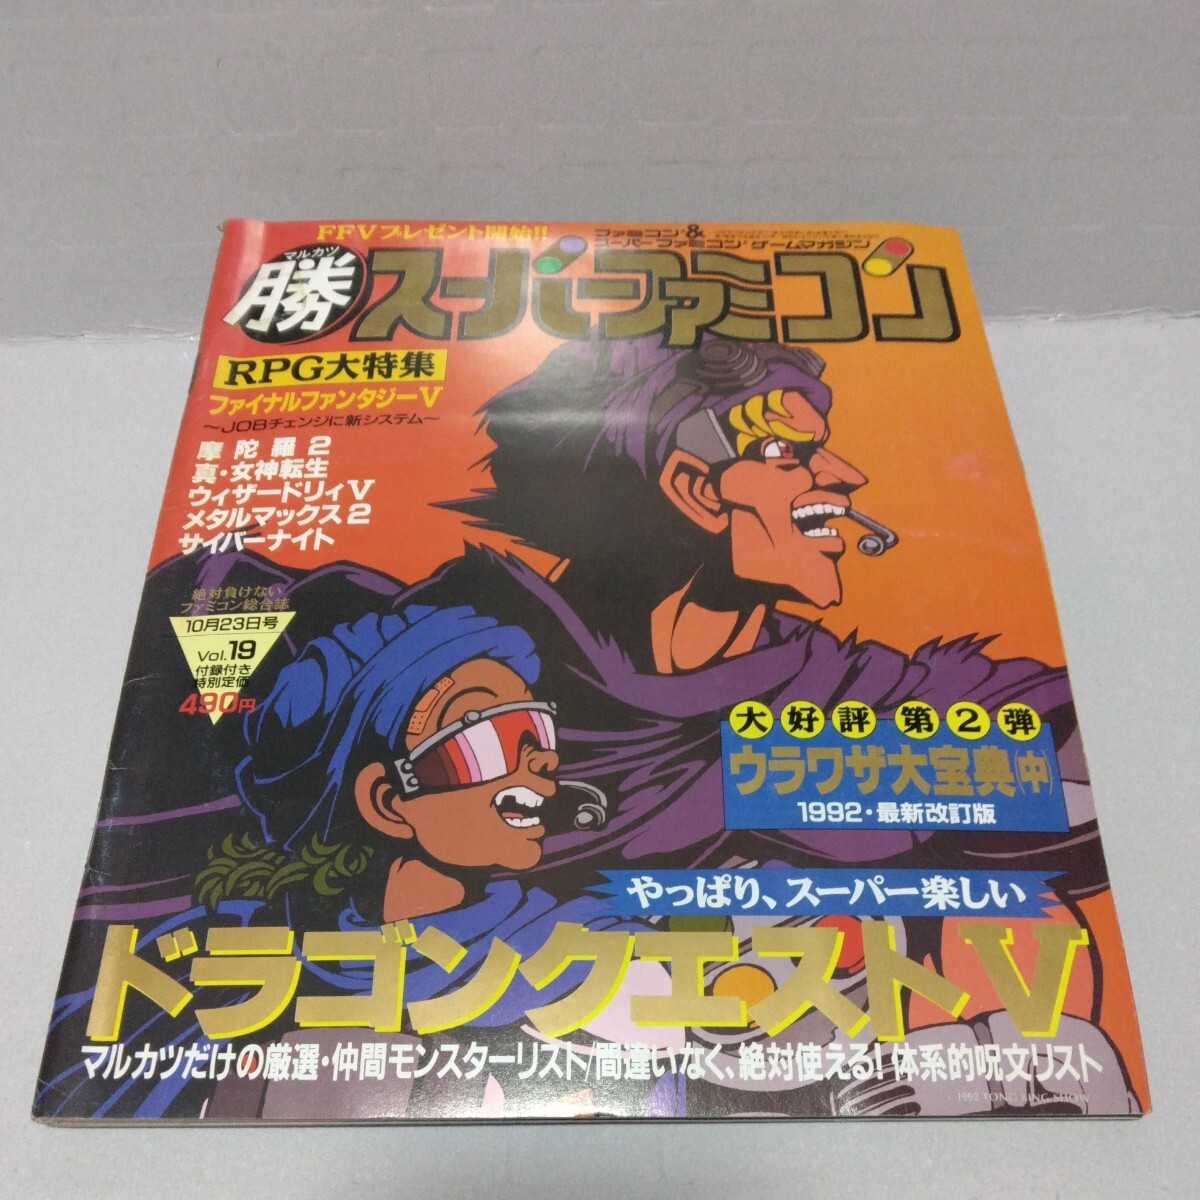 マル勝スーパーファミコン 1992年10月23日号 Vol.19 付録無し_画像1